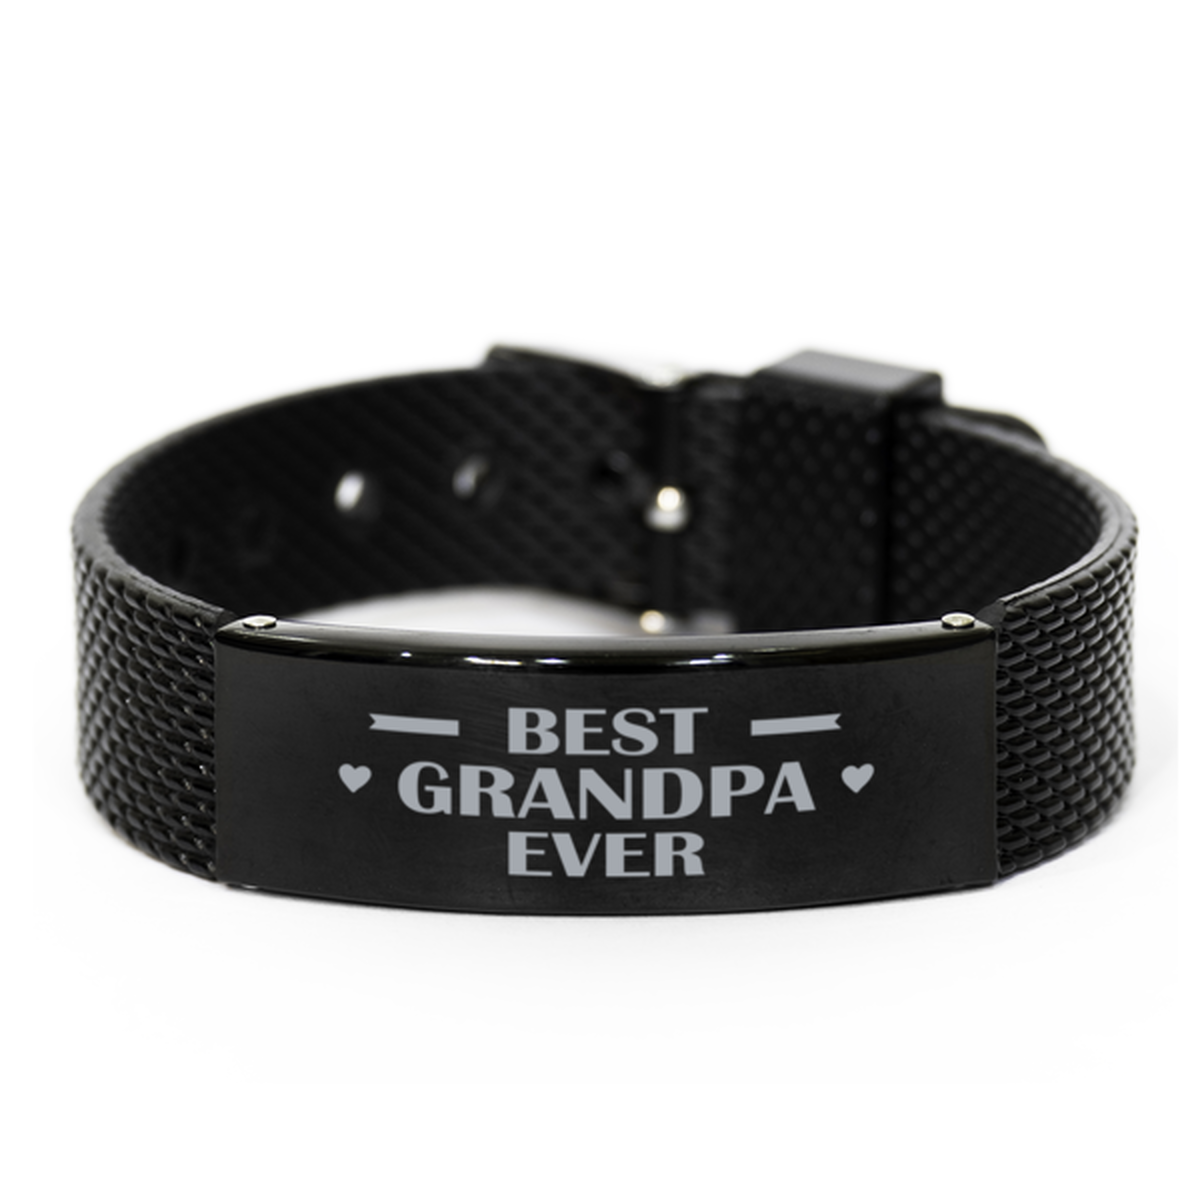 Best Grandpa Ever Grandpa Gifts, Gag Engraved Bracelet For Grandpa, Best Family Gifts For Men